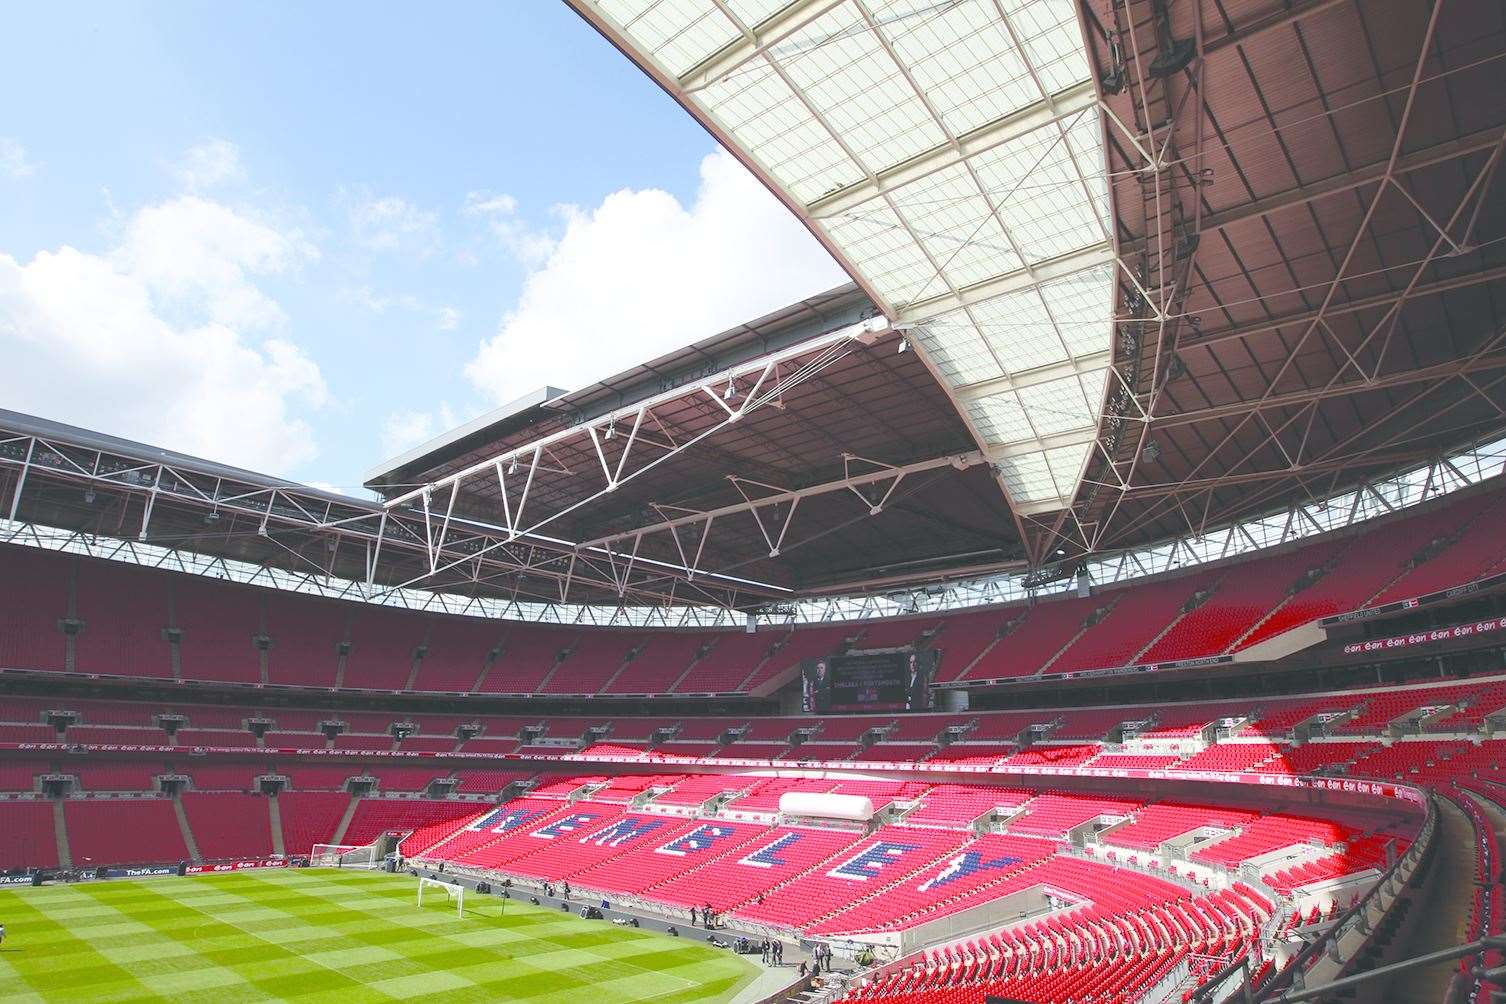 Corinthian's Wembley dream remains alive